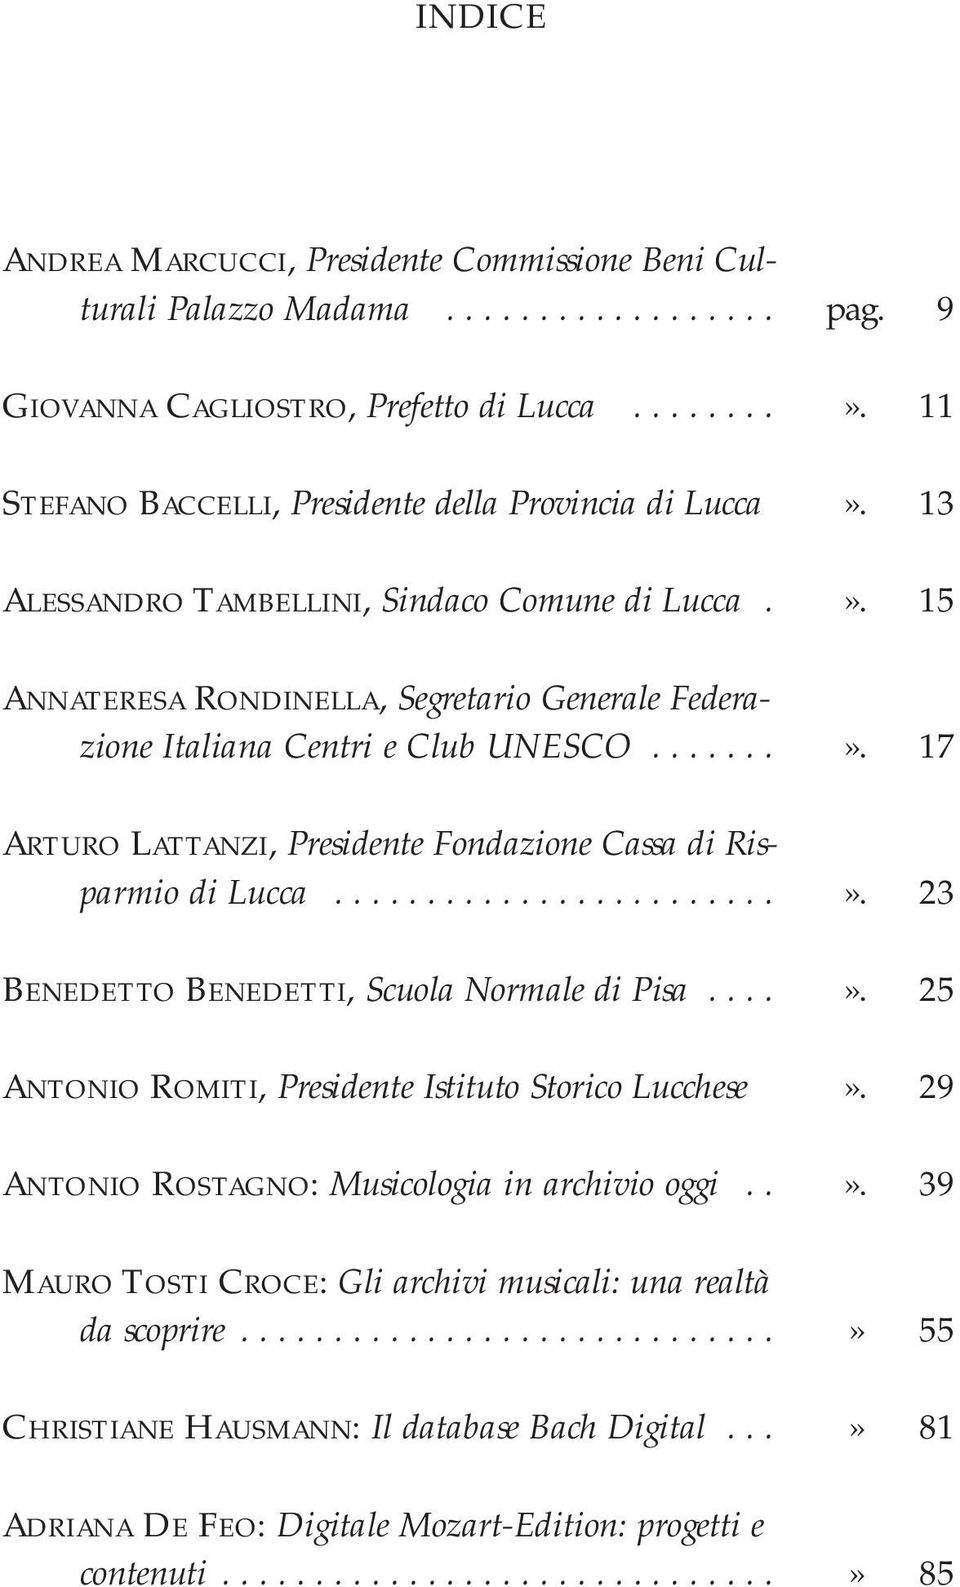 ......». 17 ARTURO LATTANZI, Presidente Fondazione Cassa di Risparmio di Lucca........................». 23 BENEDETTO BENEDETTI, Scuola Normale di Pisa....». 25 ANTONIO ROMITI, Presidente Istituto Storico Lucchese».